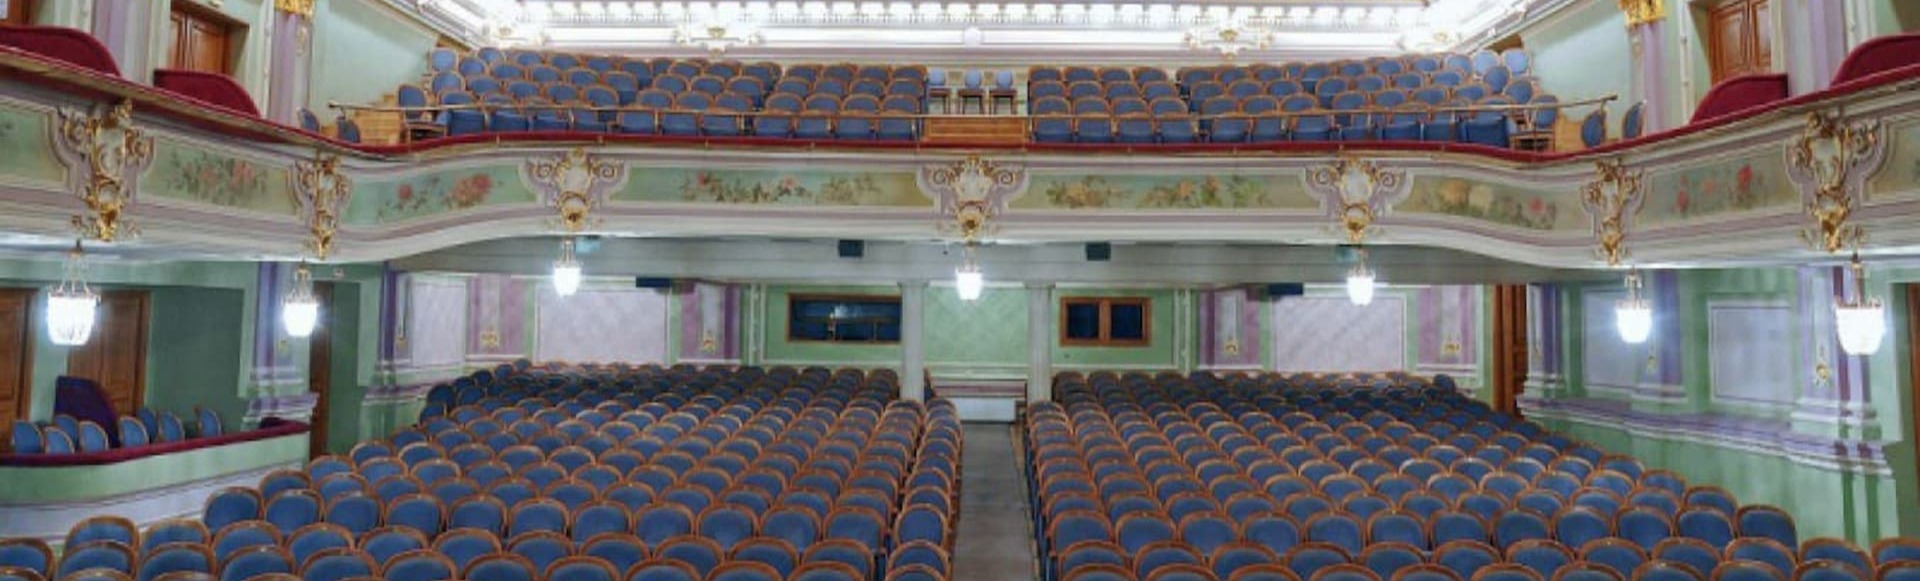 Драматический театр имени в ф комиссаржевской фото зала